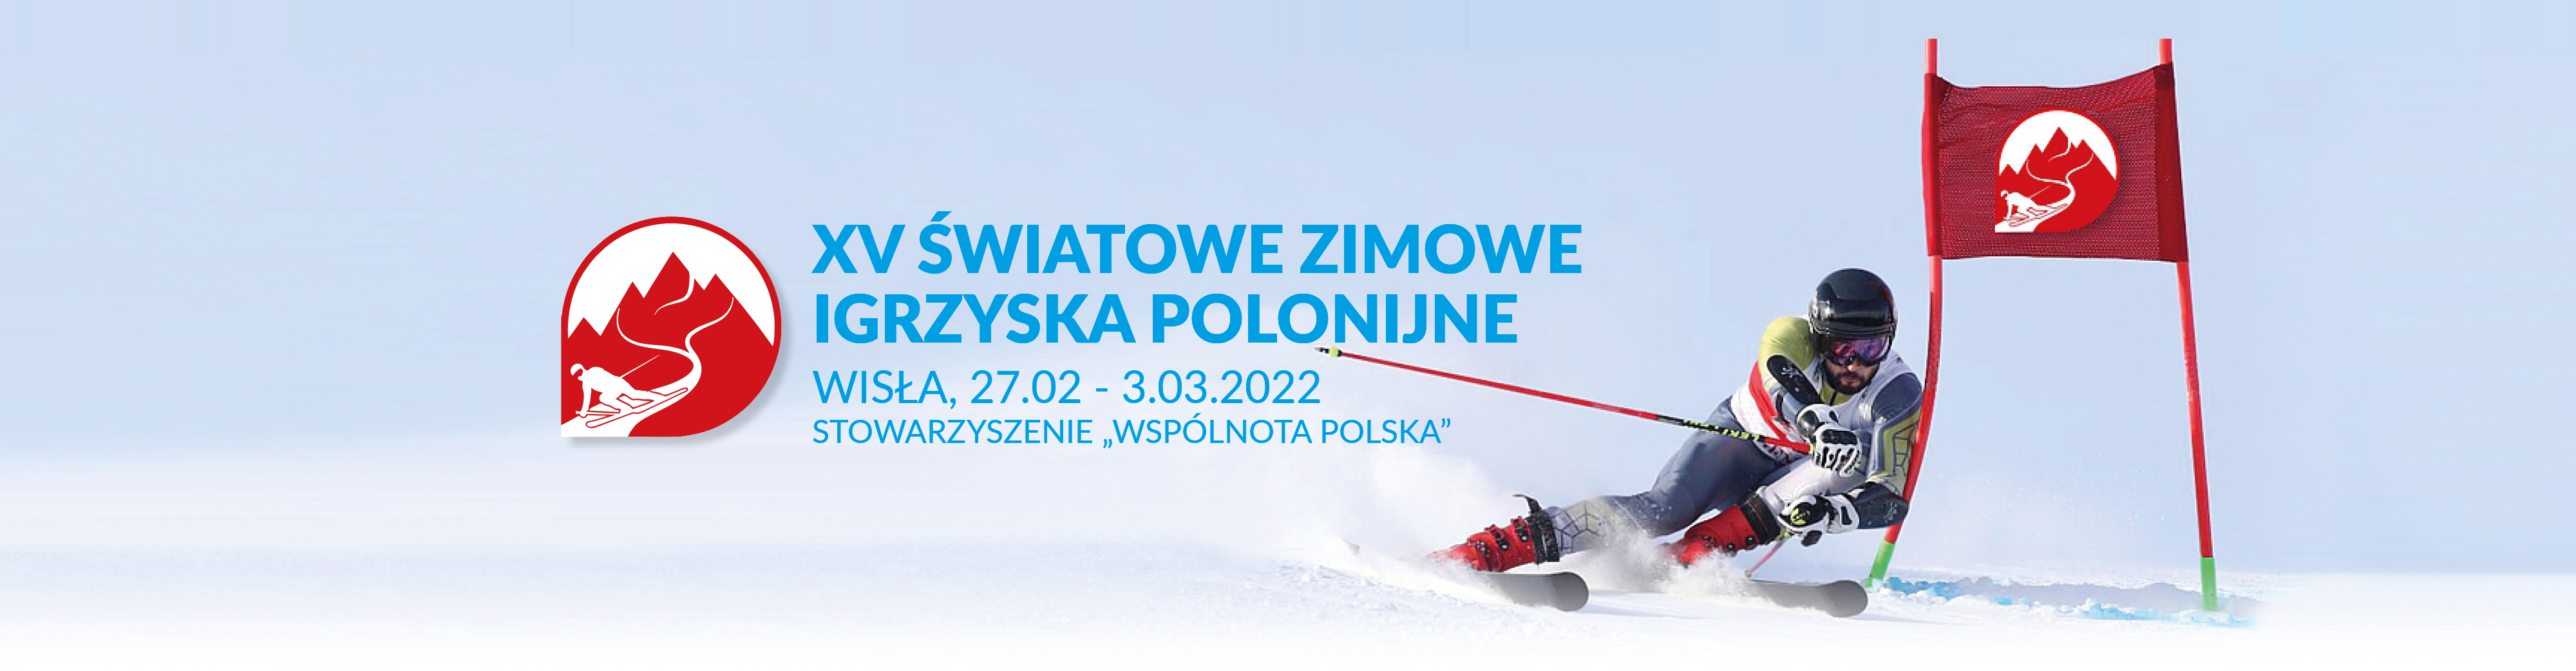 XV Światowe Zimowe Igrzyska Polonijne 2022 - zapisy